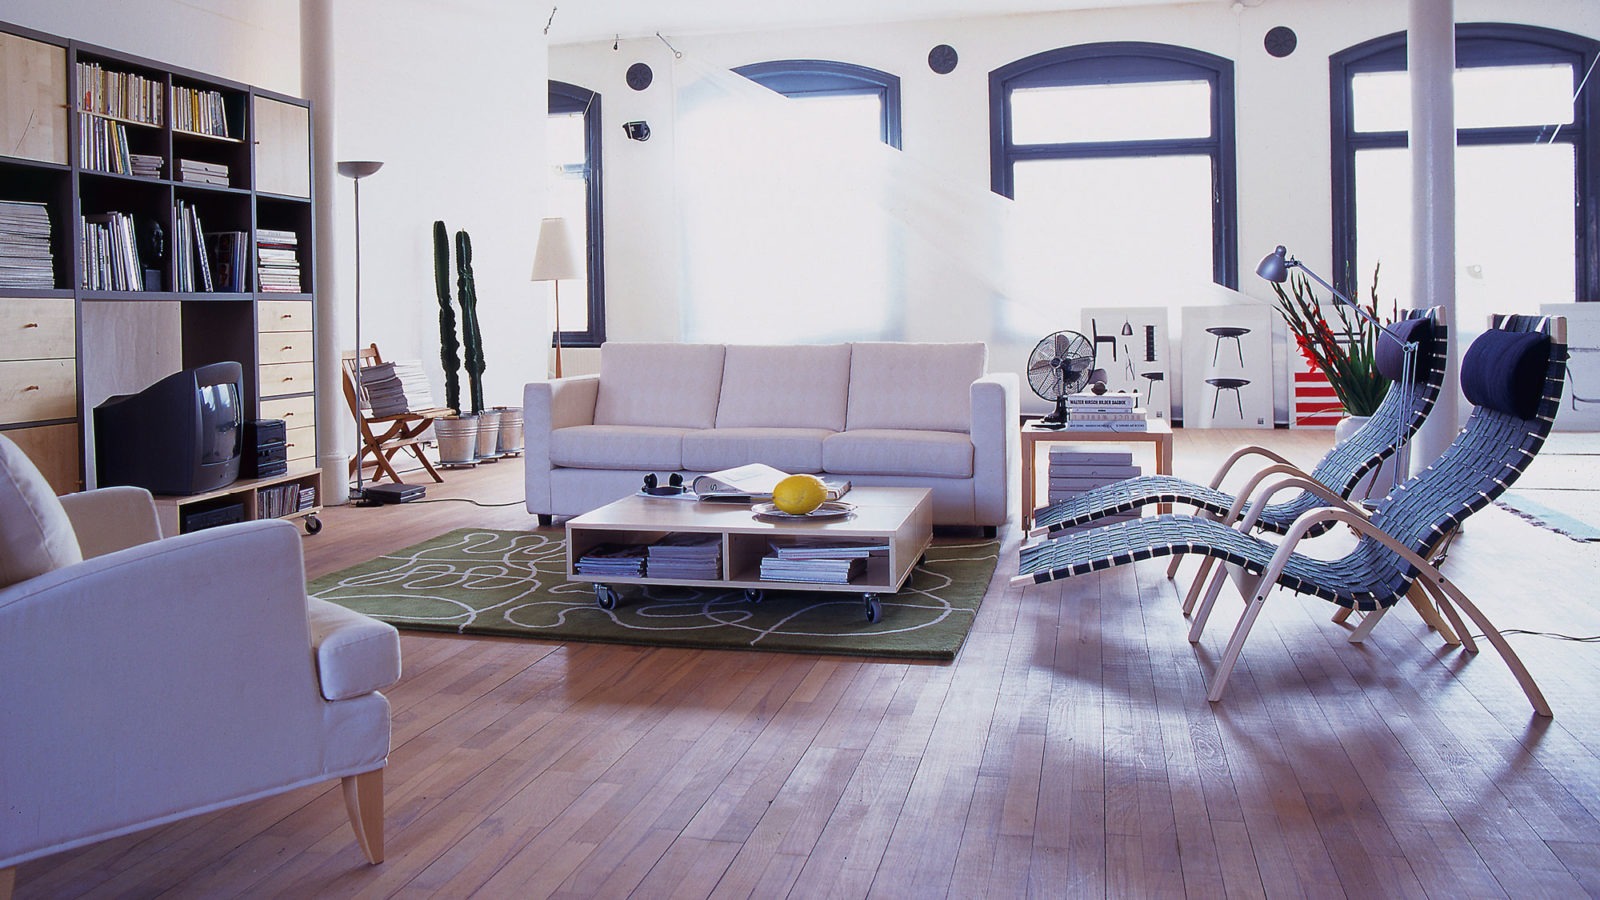 Grande pièce avec piliers et parquet. Table basse sur roulettes, un canapé, un fauteuil et deux chaises longues.